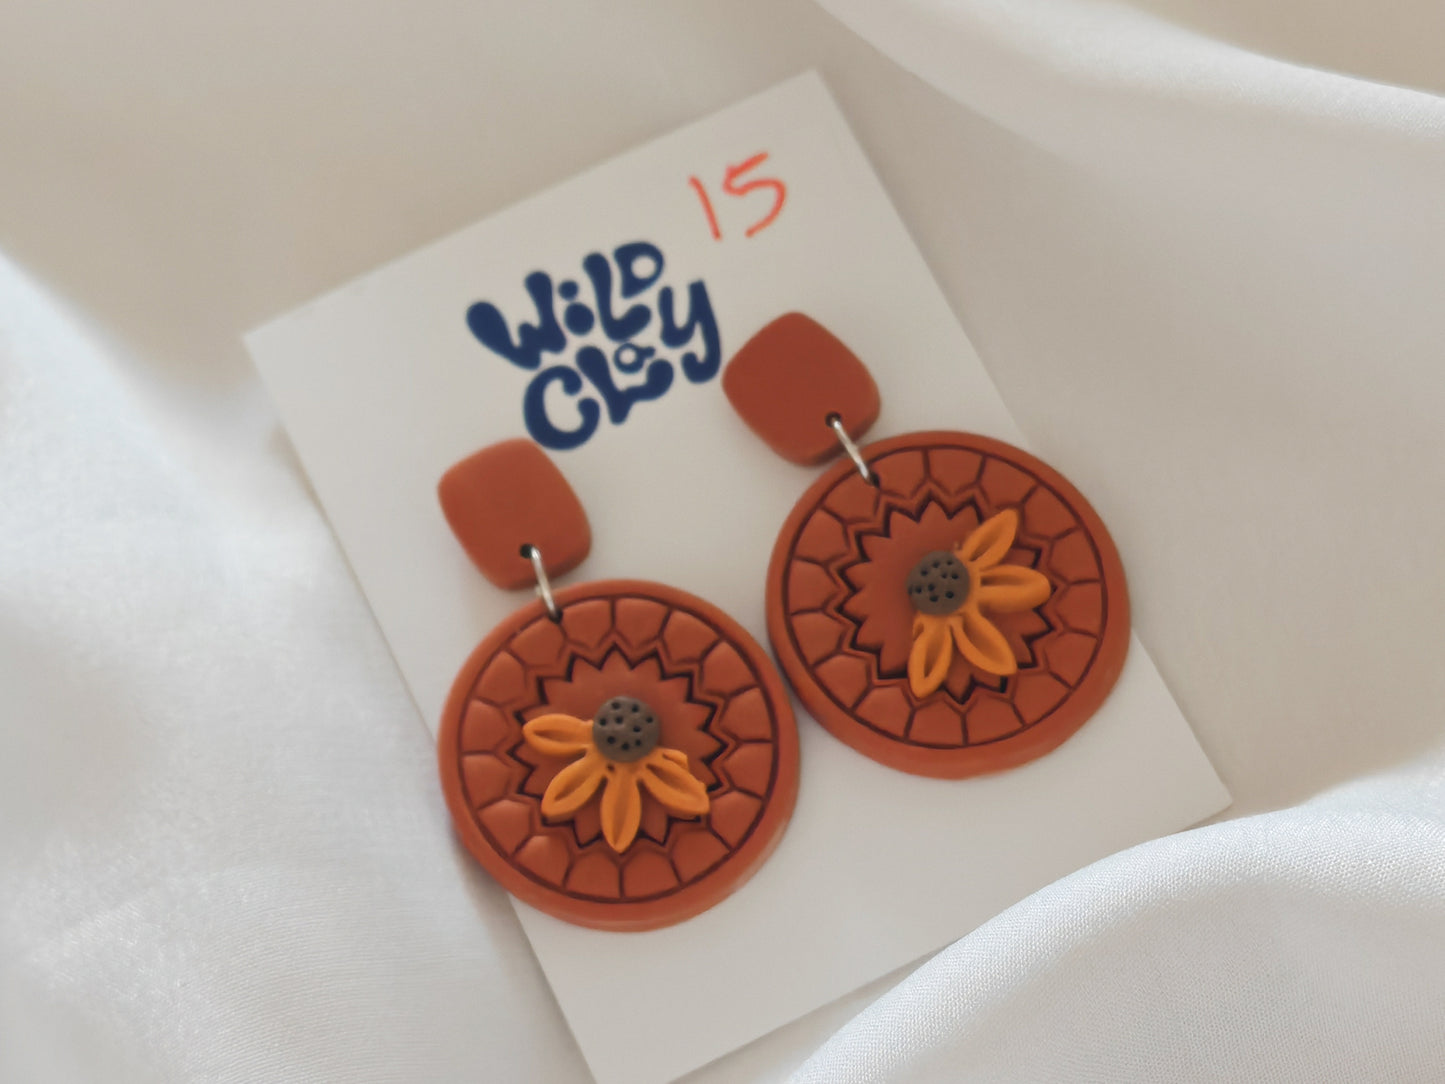 Boho sunflower dangle earrings